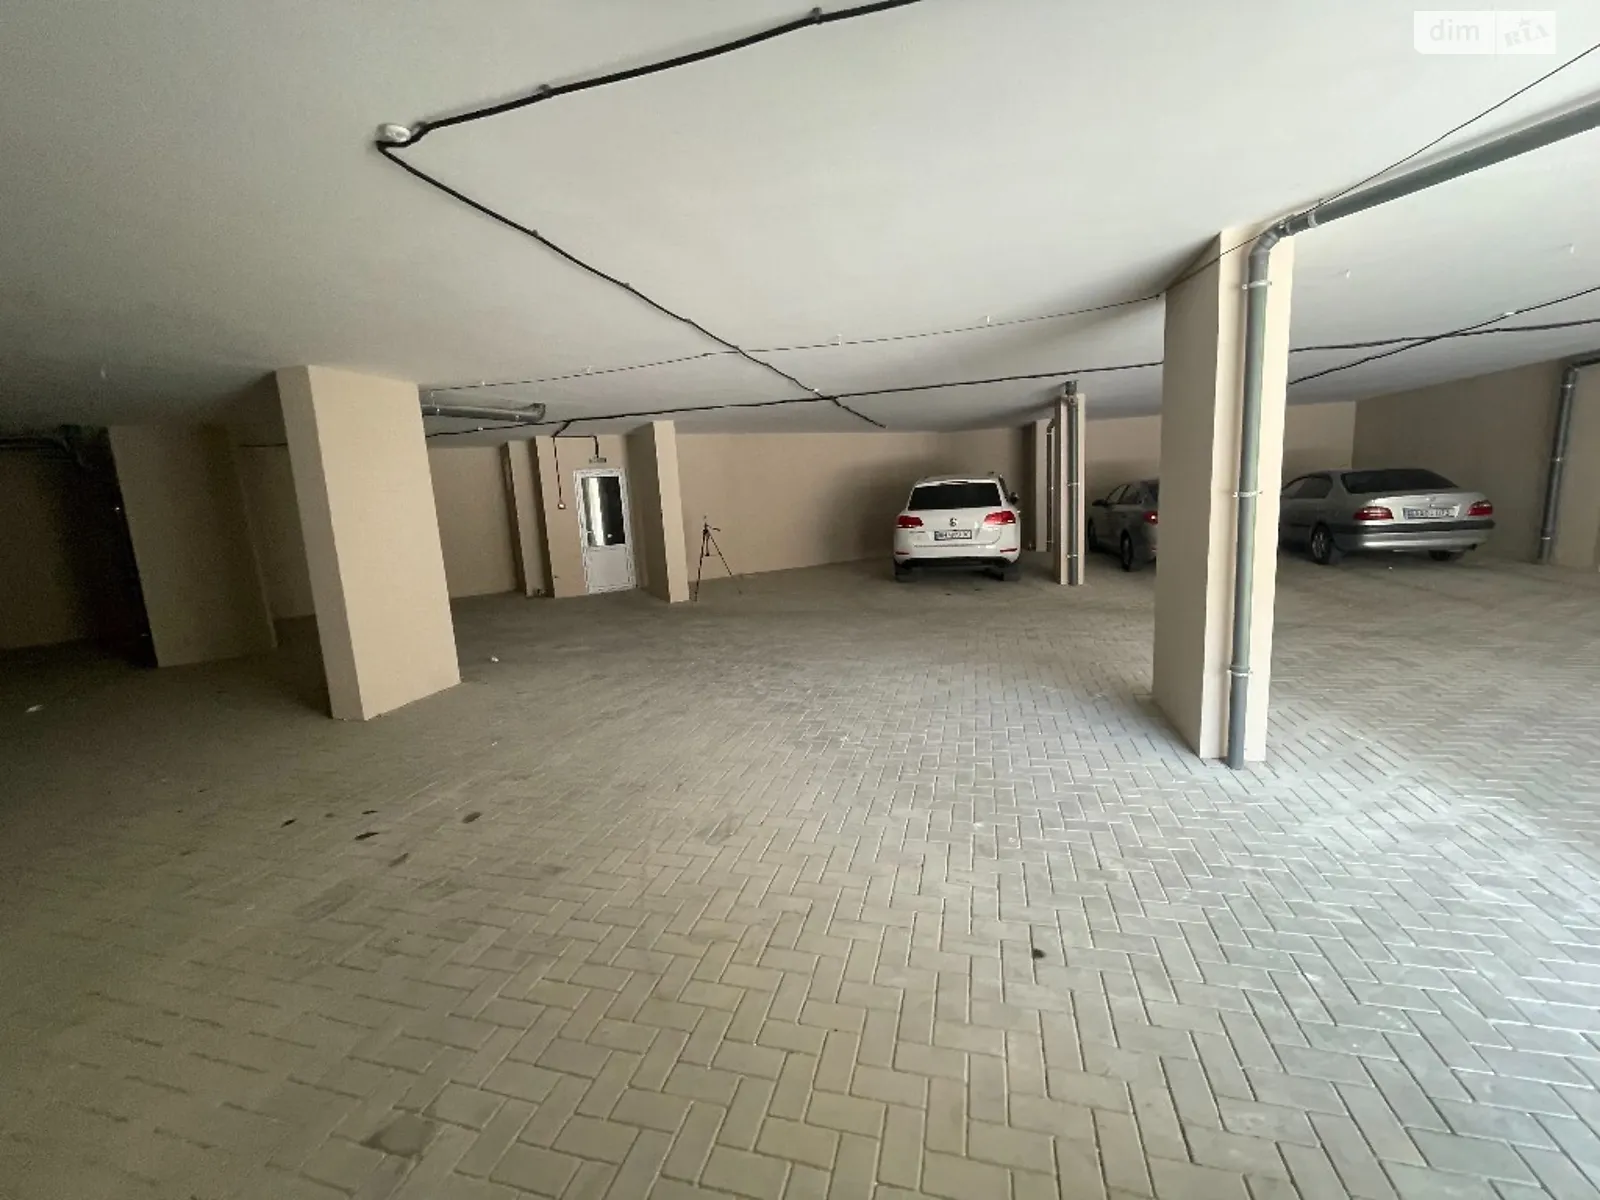 Продается подземный паркинг под легковое авто на 16.67 кв. м - фото 3